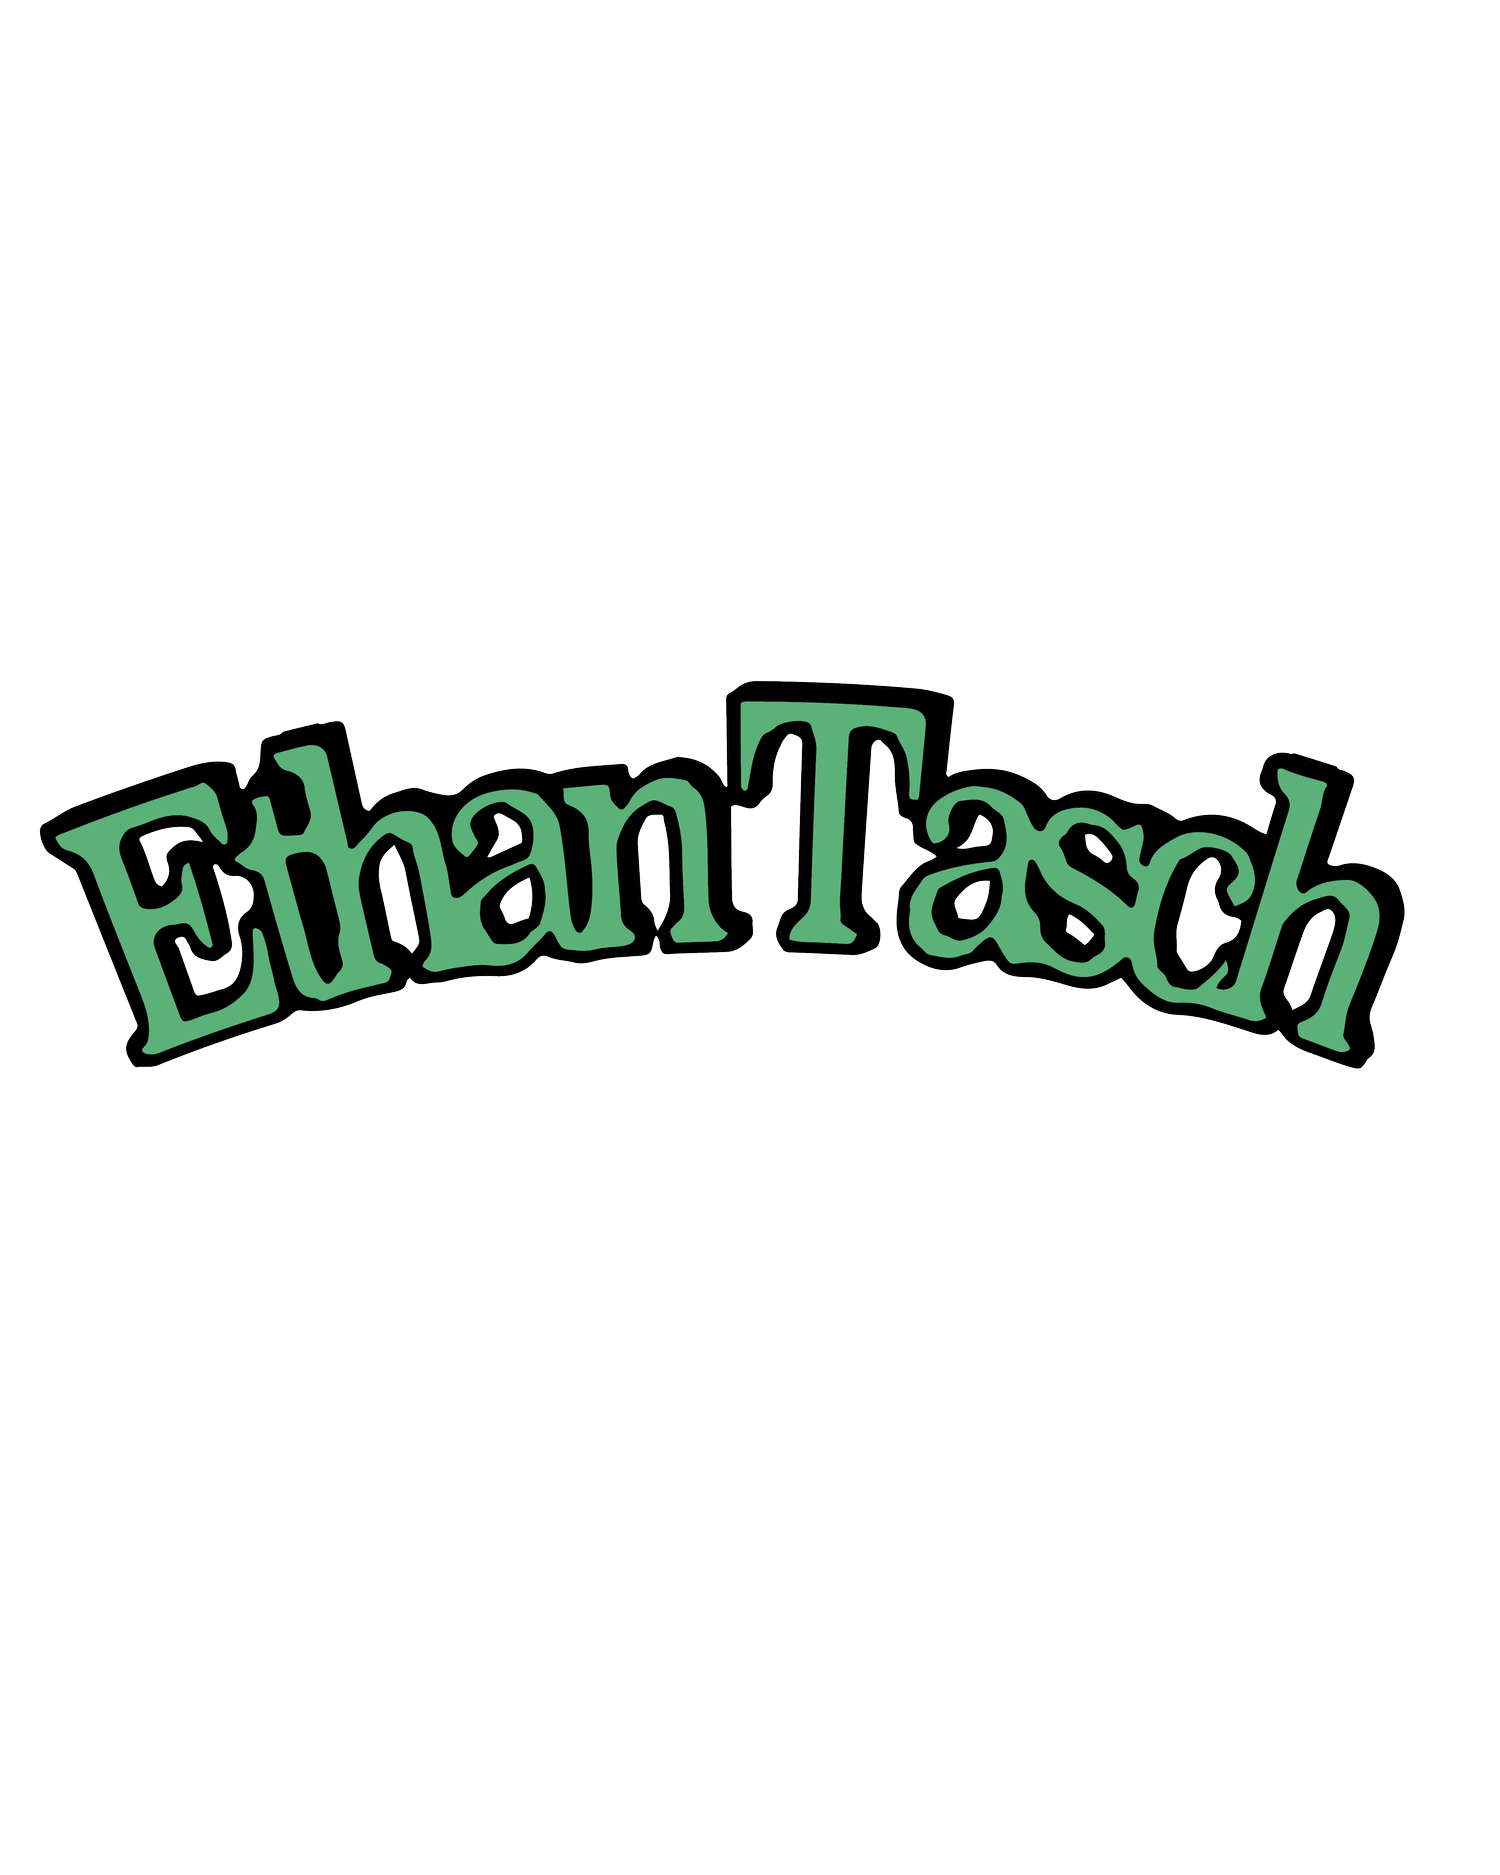 Ethan Tasch